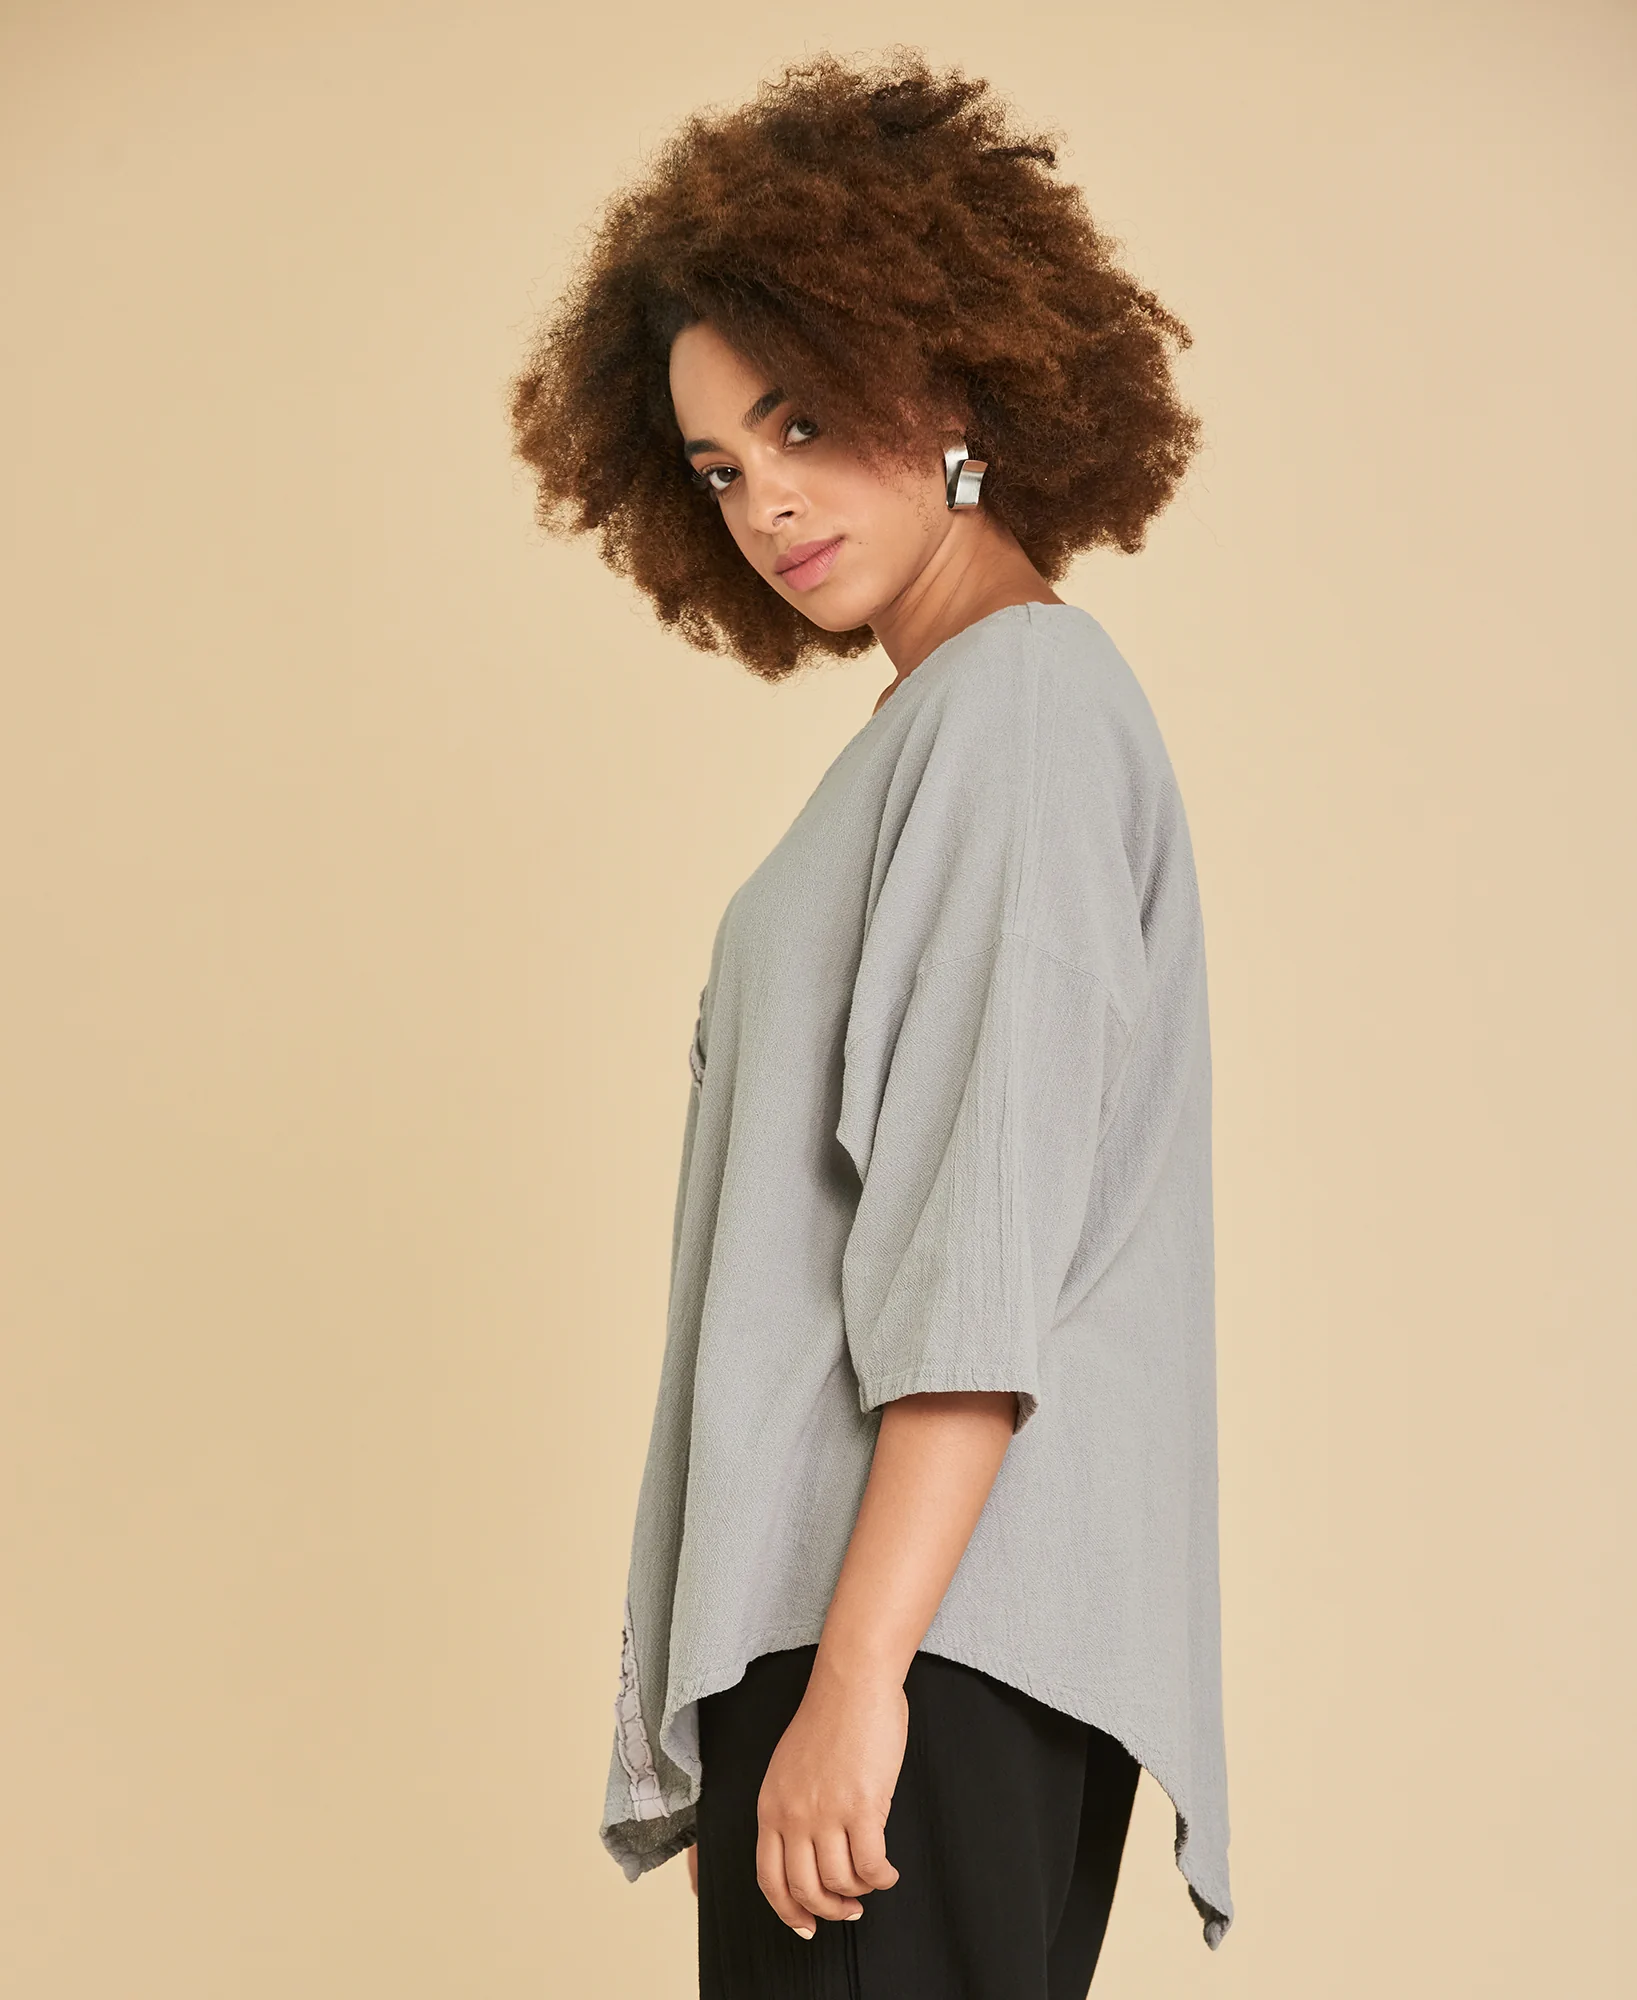 Blusa larga de algodón con mangas ¾ Aruba color gris claro